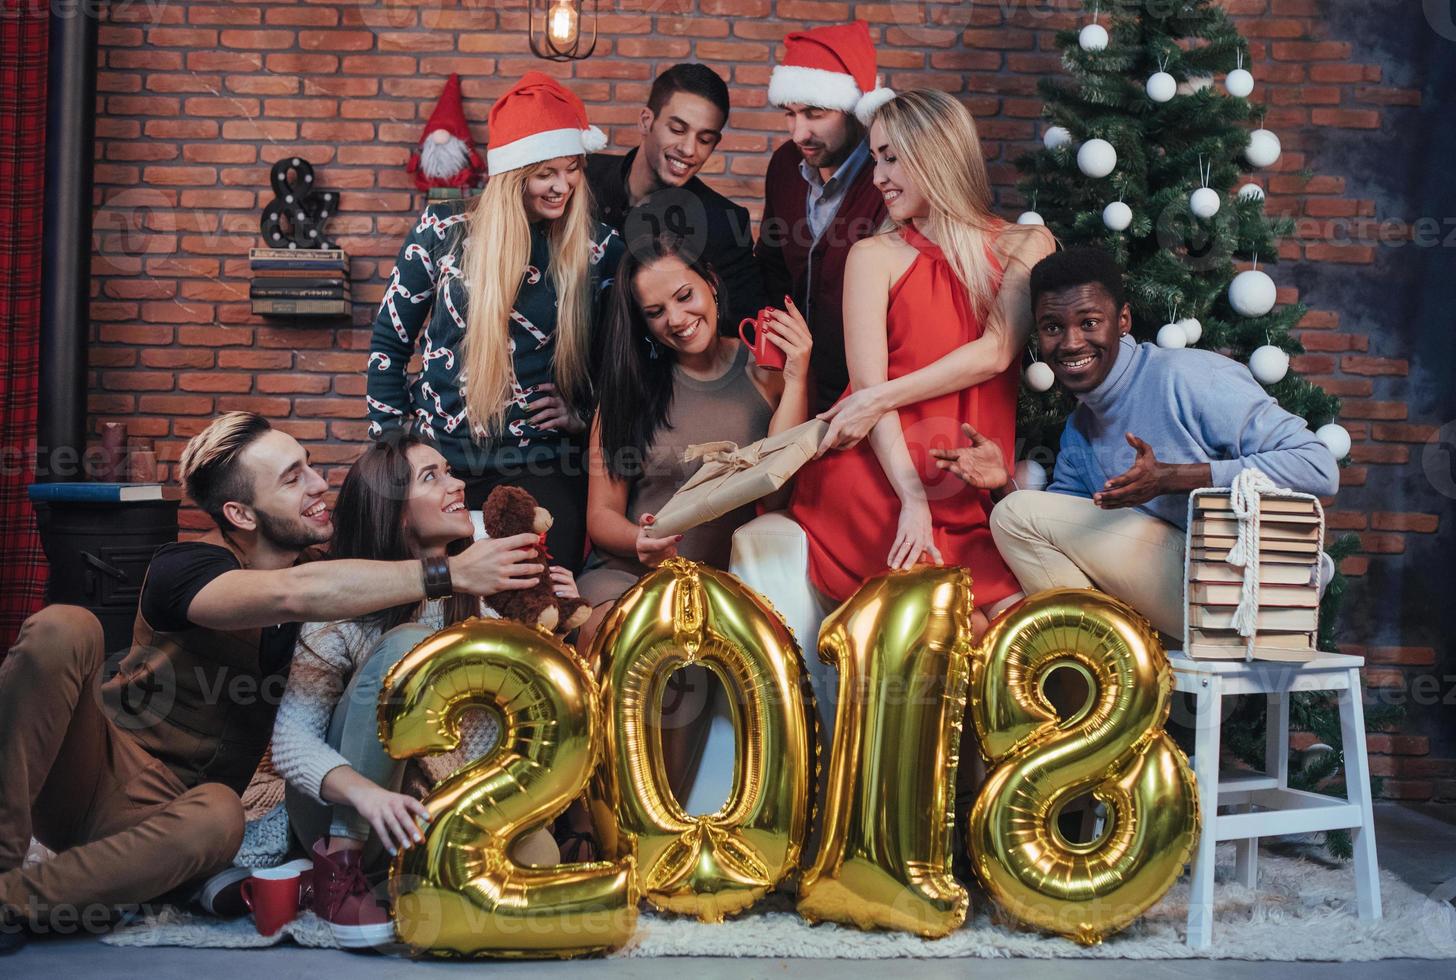 grupp glada gamla vänner kommunicerar med varandra. nytt år 2018 kommer. fira in det nya året i en mysig hemmiljö foto